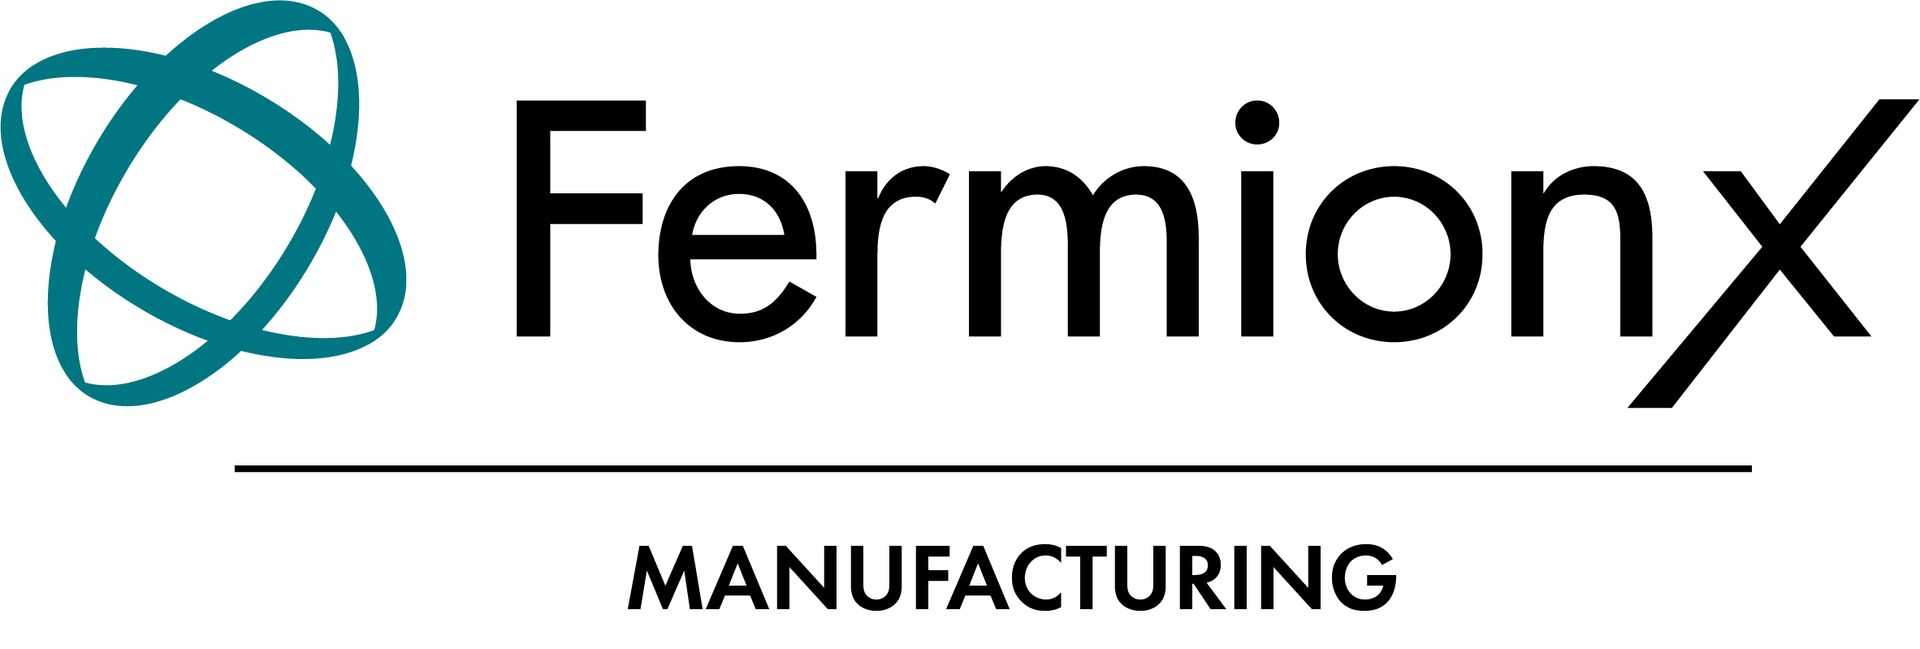 FermionX Manufacturing Ltd